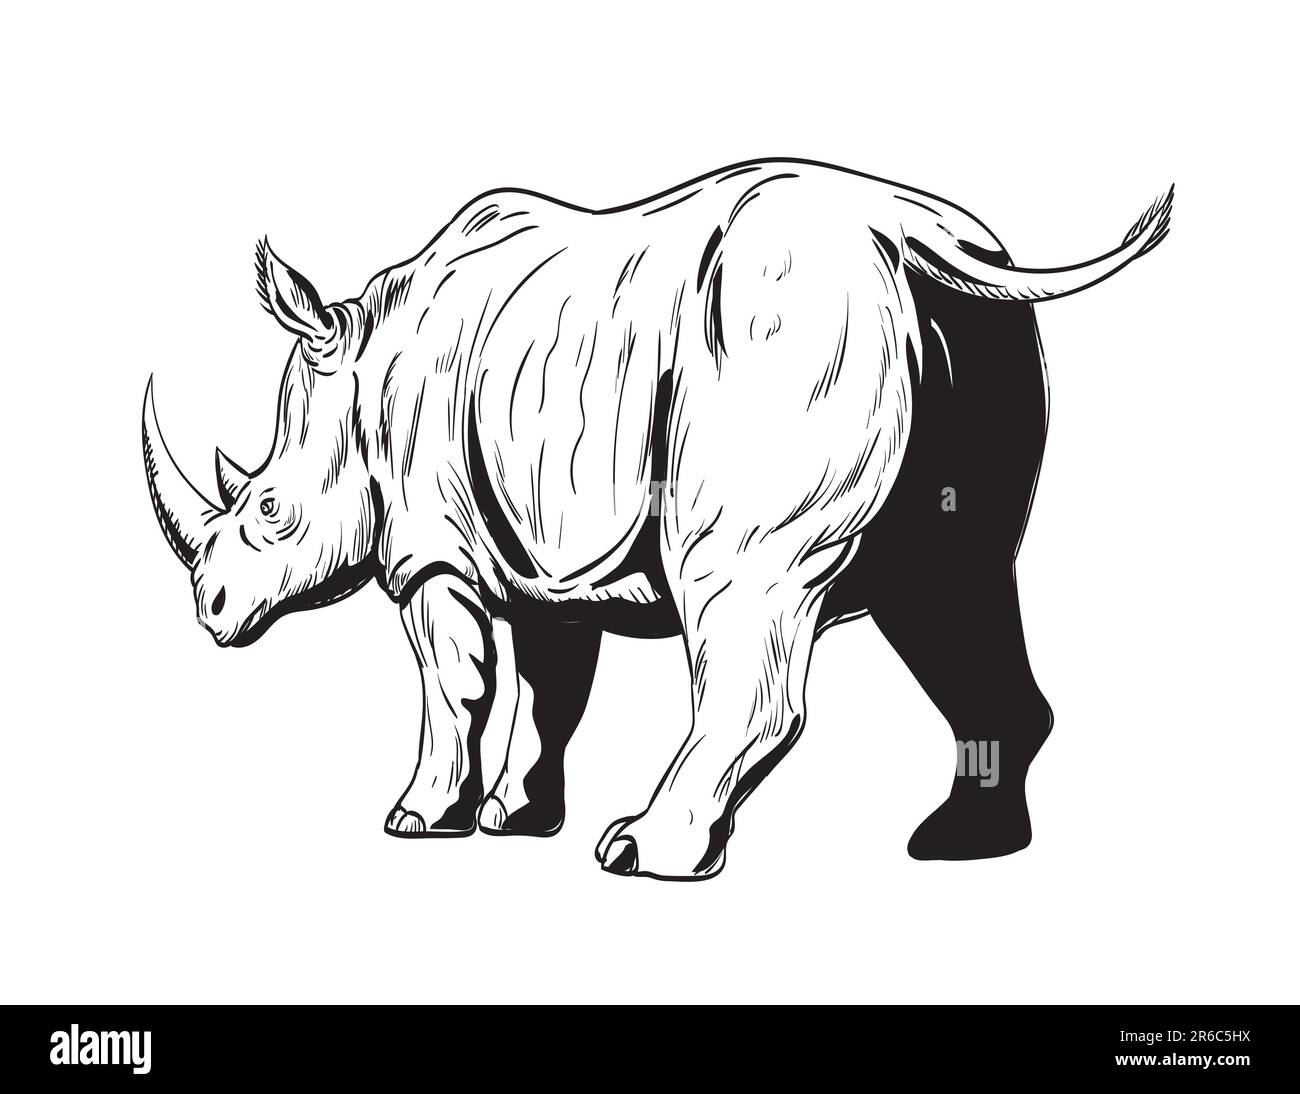 Dessin de style BD ou illustration d'un rhinocéros ou d'un rhinocéros, un ongulés à bout impair de la famille des rhinocéros, en charge vu de l'isol à angle bas Banque D'Images